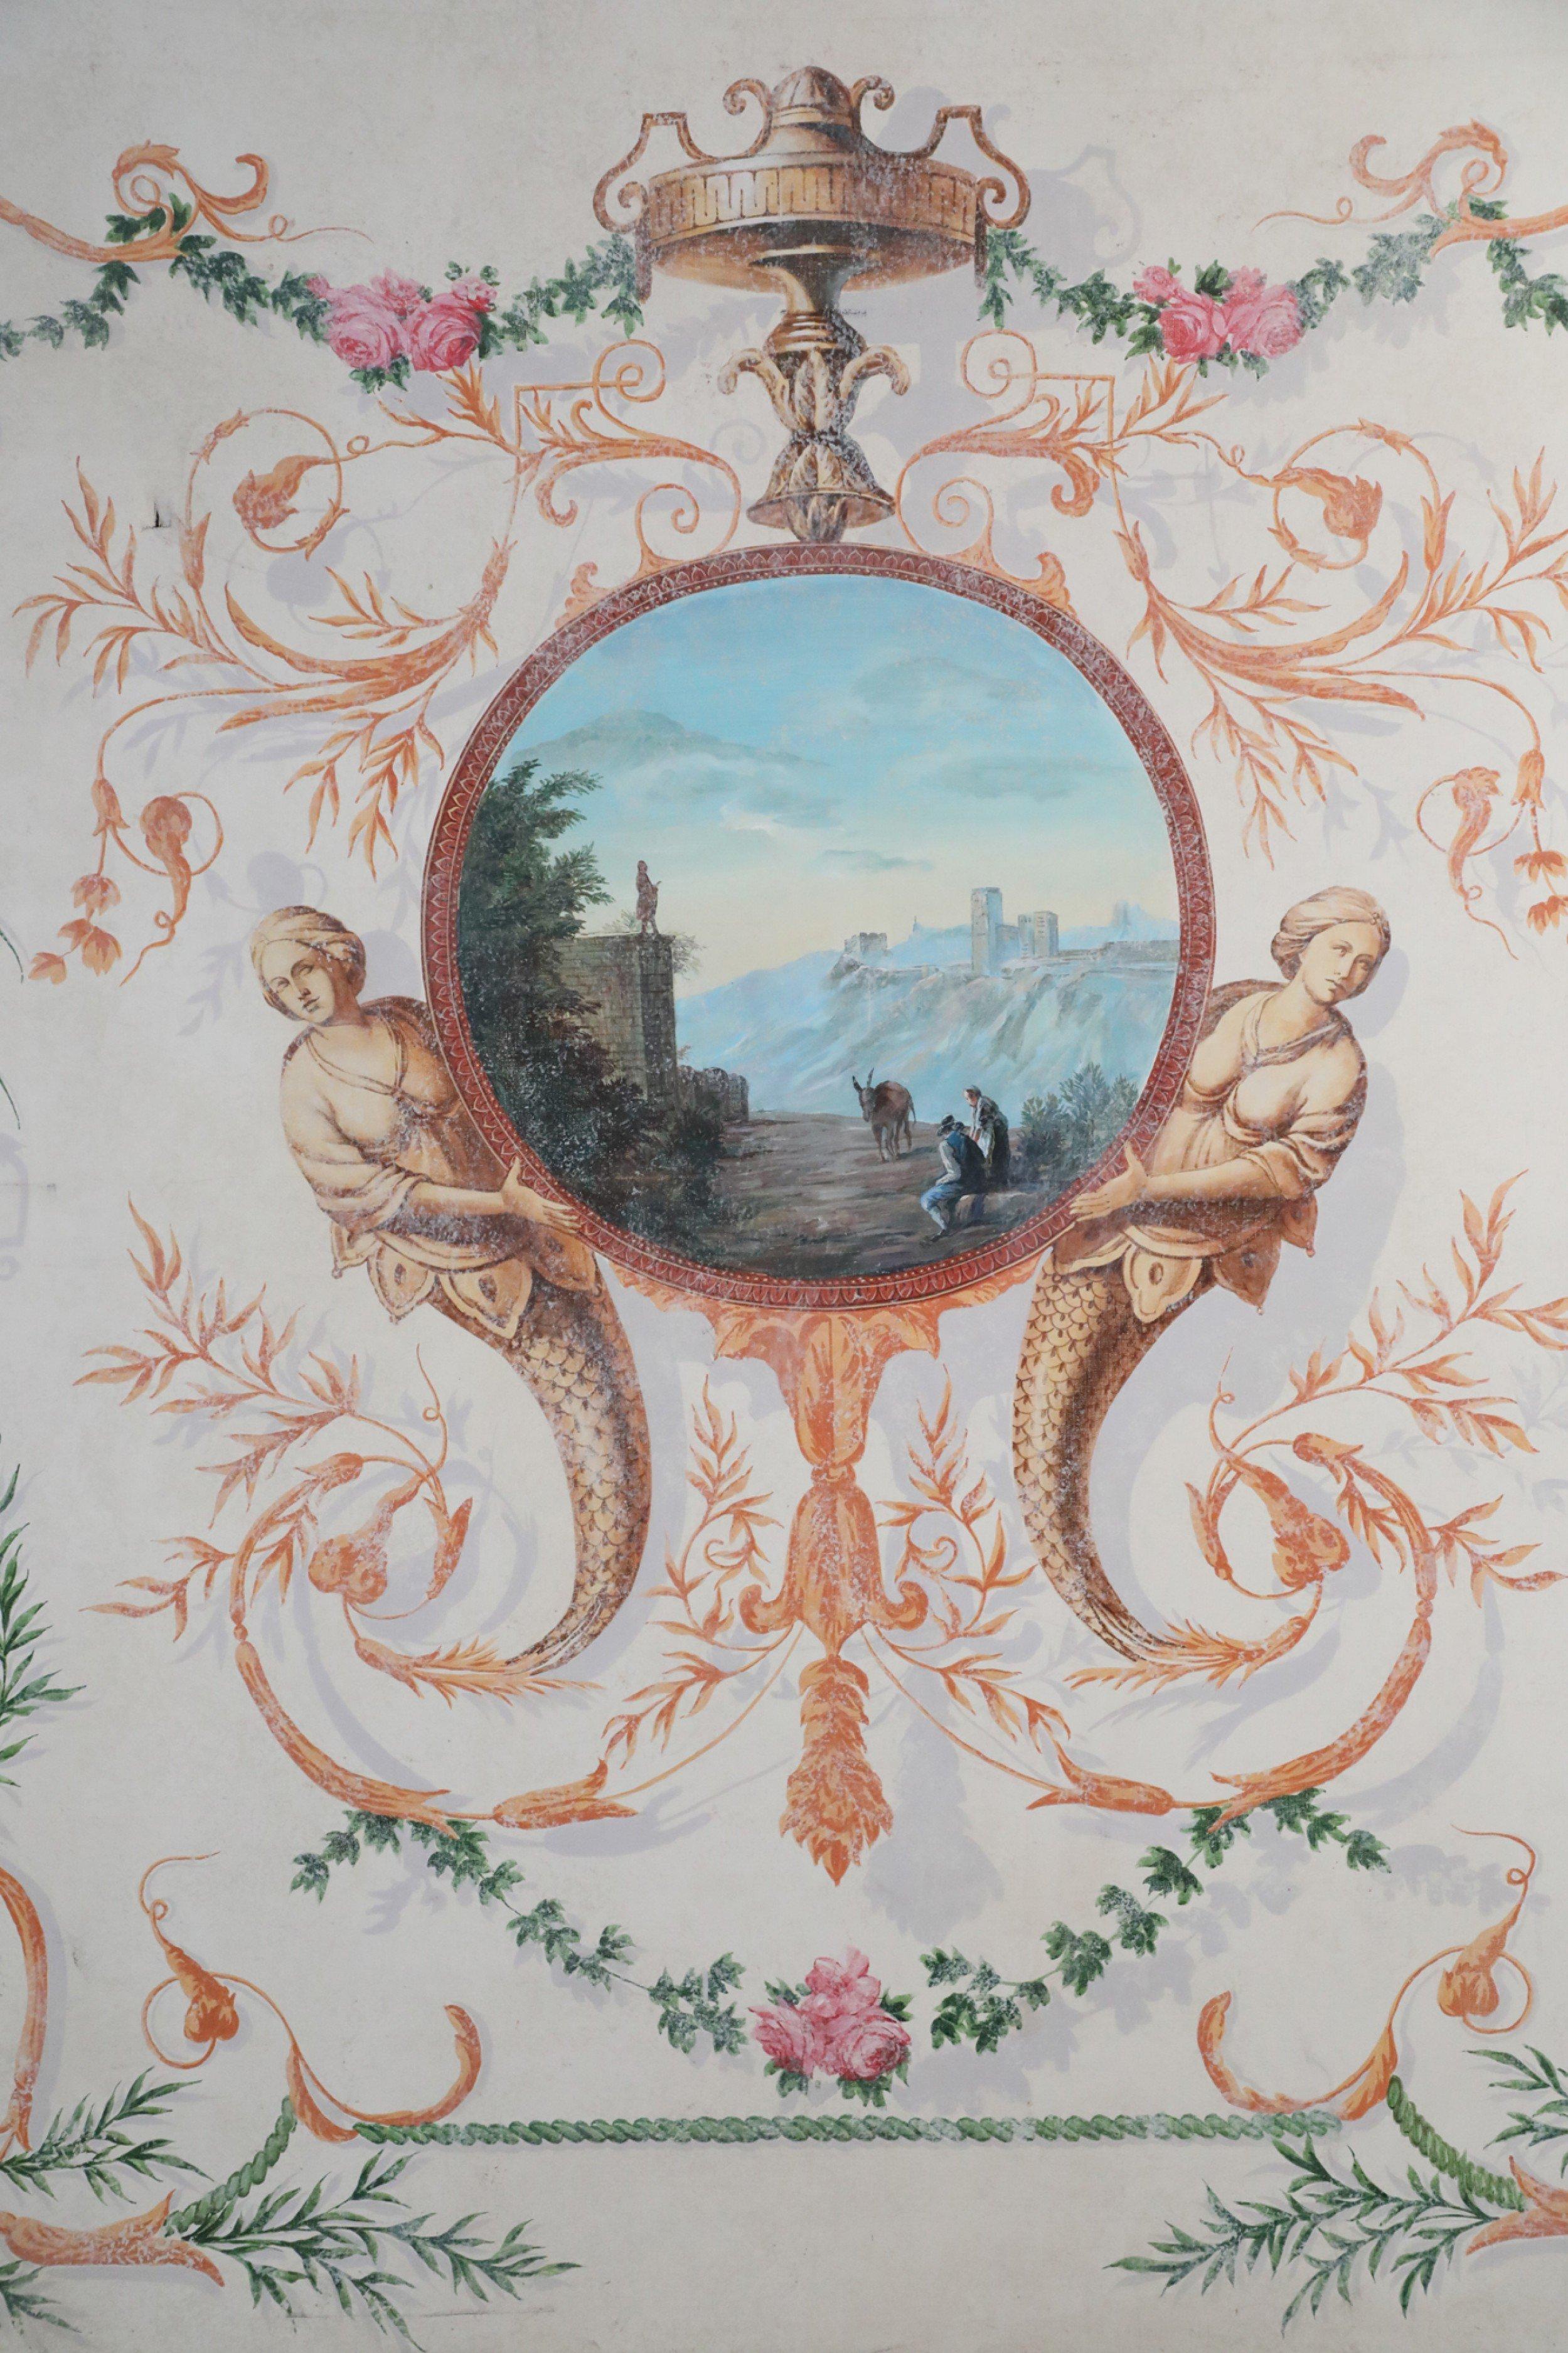 Neoklassizistisches (20. Jahrhundert) Acrylgemälde mit einer zentralen kreisförmigen Landschaftsszene mit Männern und einem Esel an einer Bergfestung, die von zwei Meerjungfrauen gehalten wird, und einer kunstvollen schattierten Blattbordüre mit